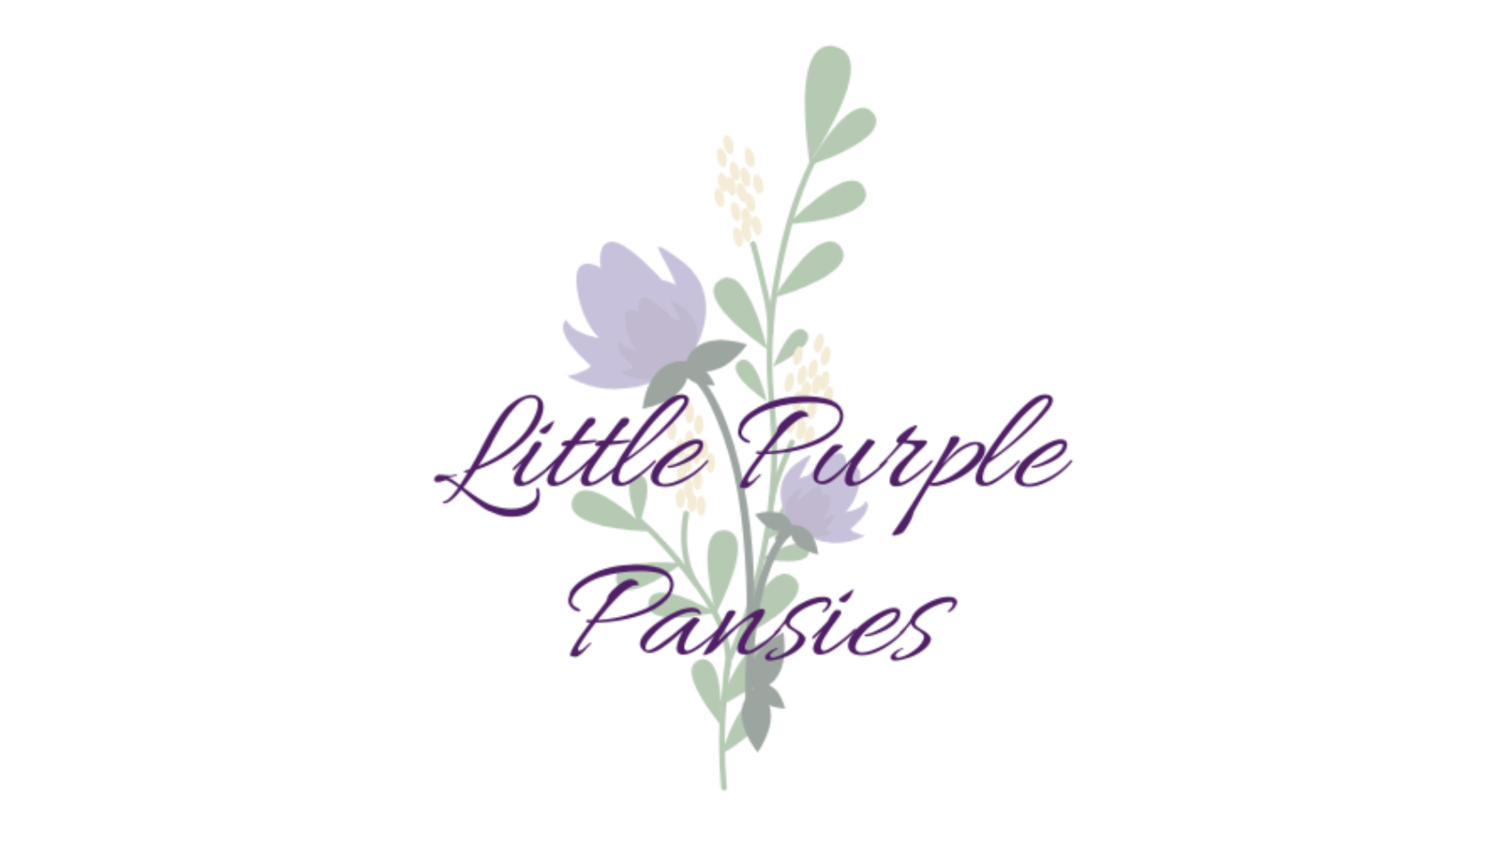 Little Purple Pansies